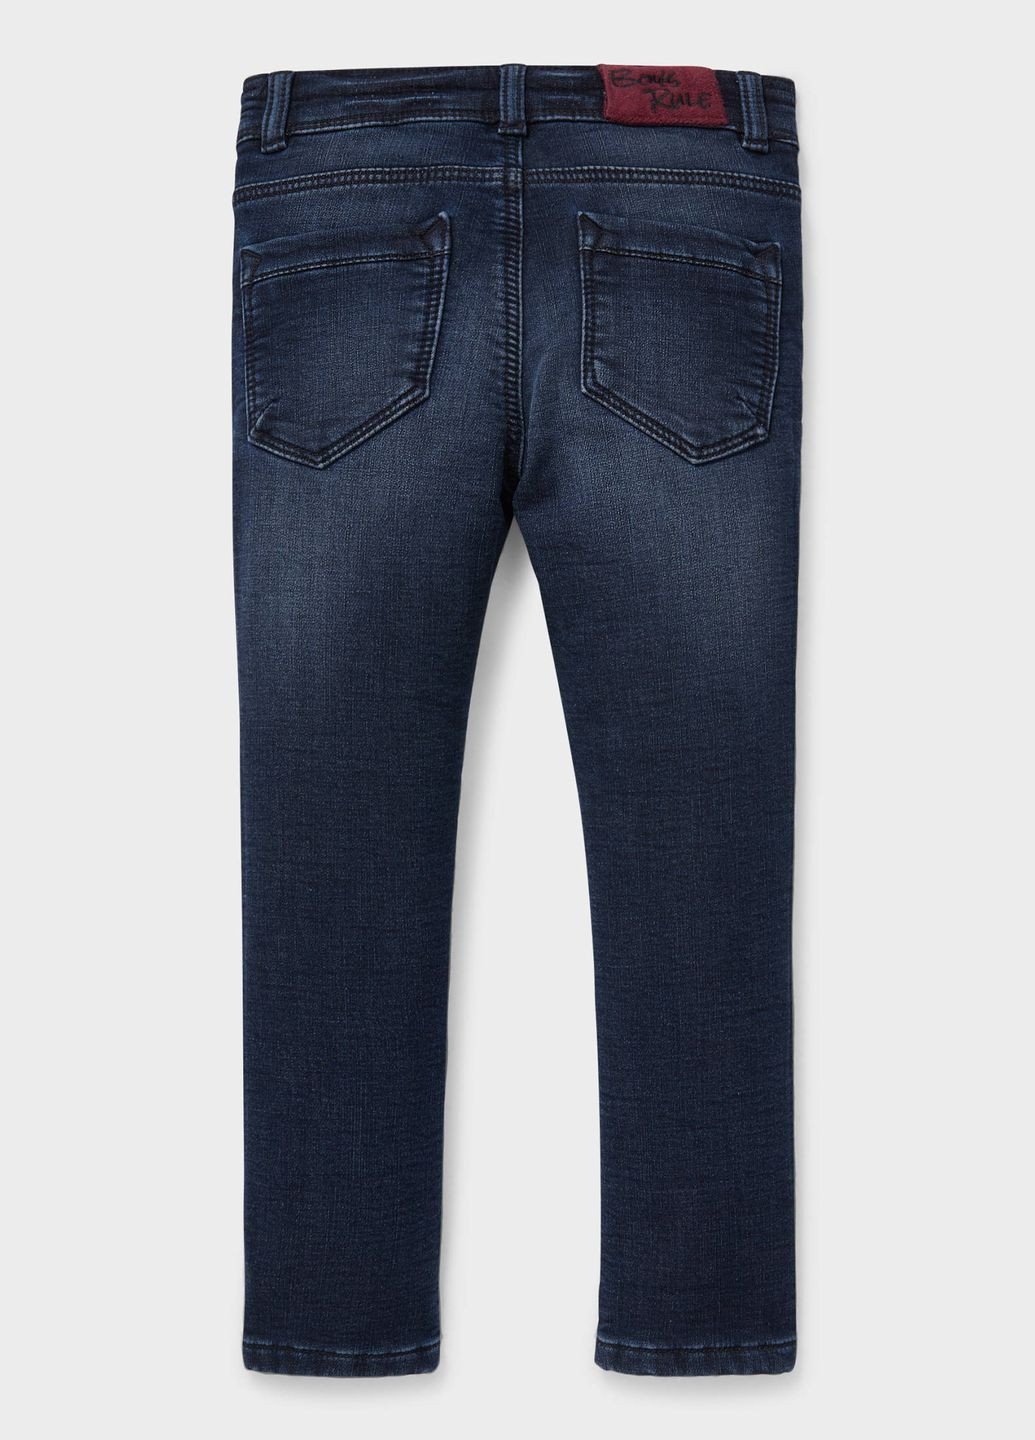 Синие демисезонные джинсы с начесом для мальчика 134 размер синие 2146527 C&A